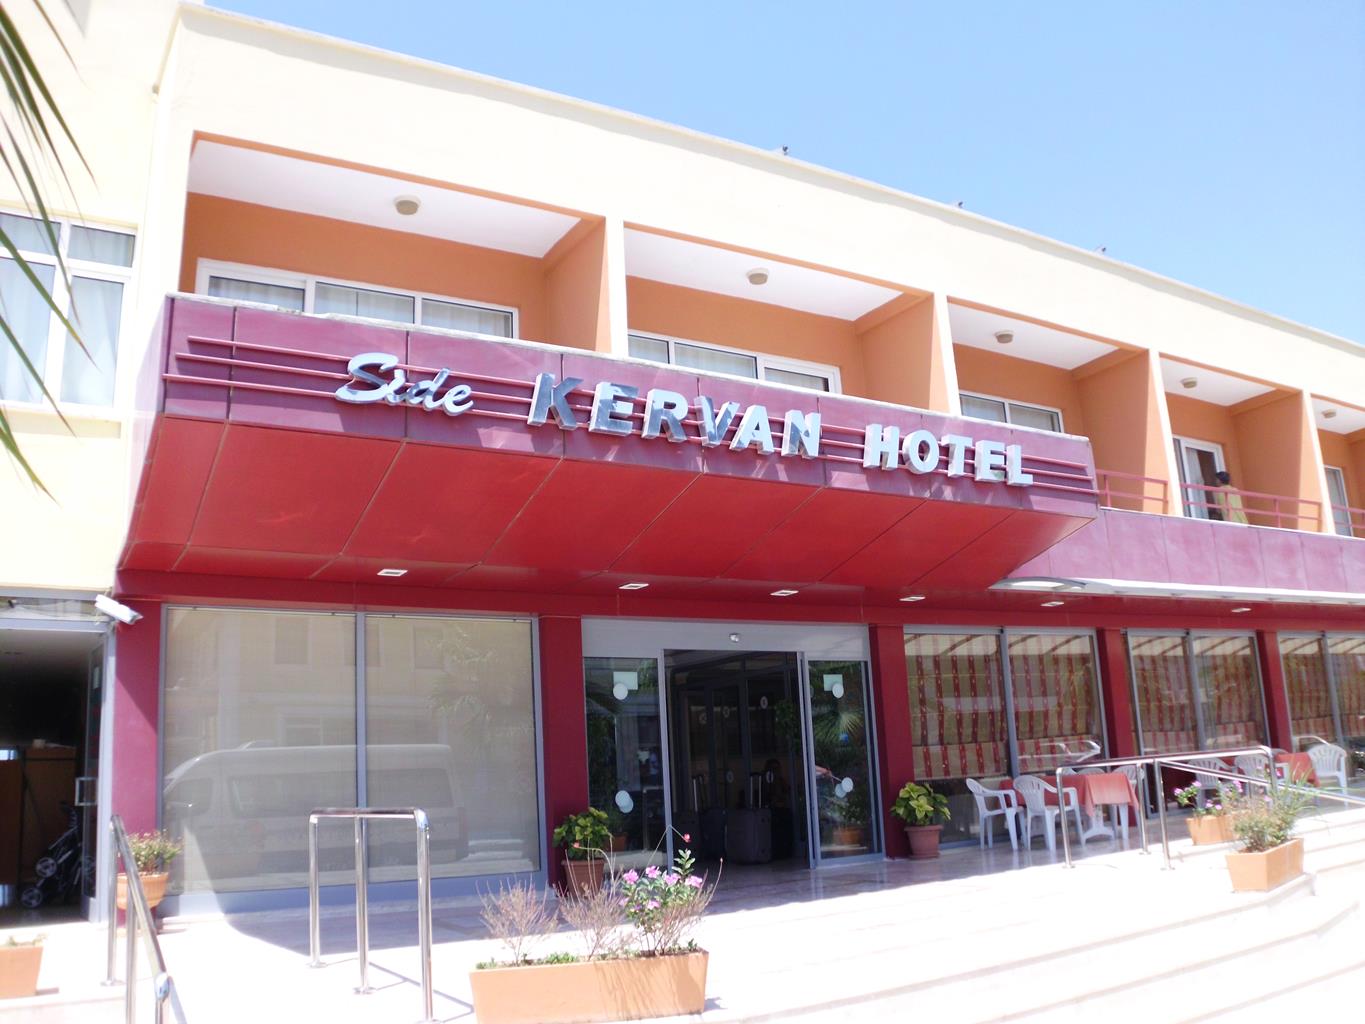 Side Kervan Hotel, Side, Turkse Rivièra, Turkije